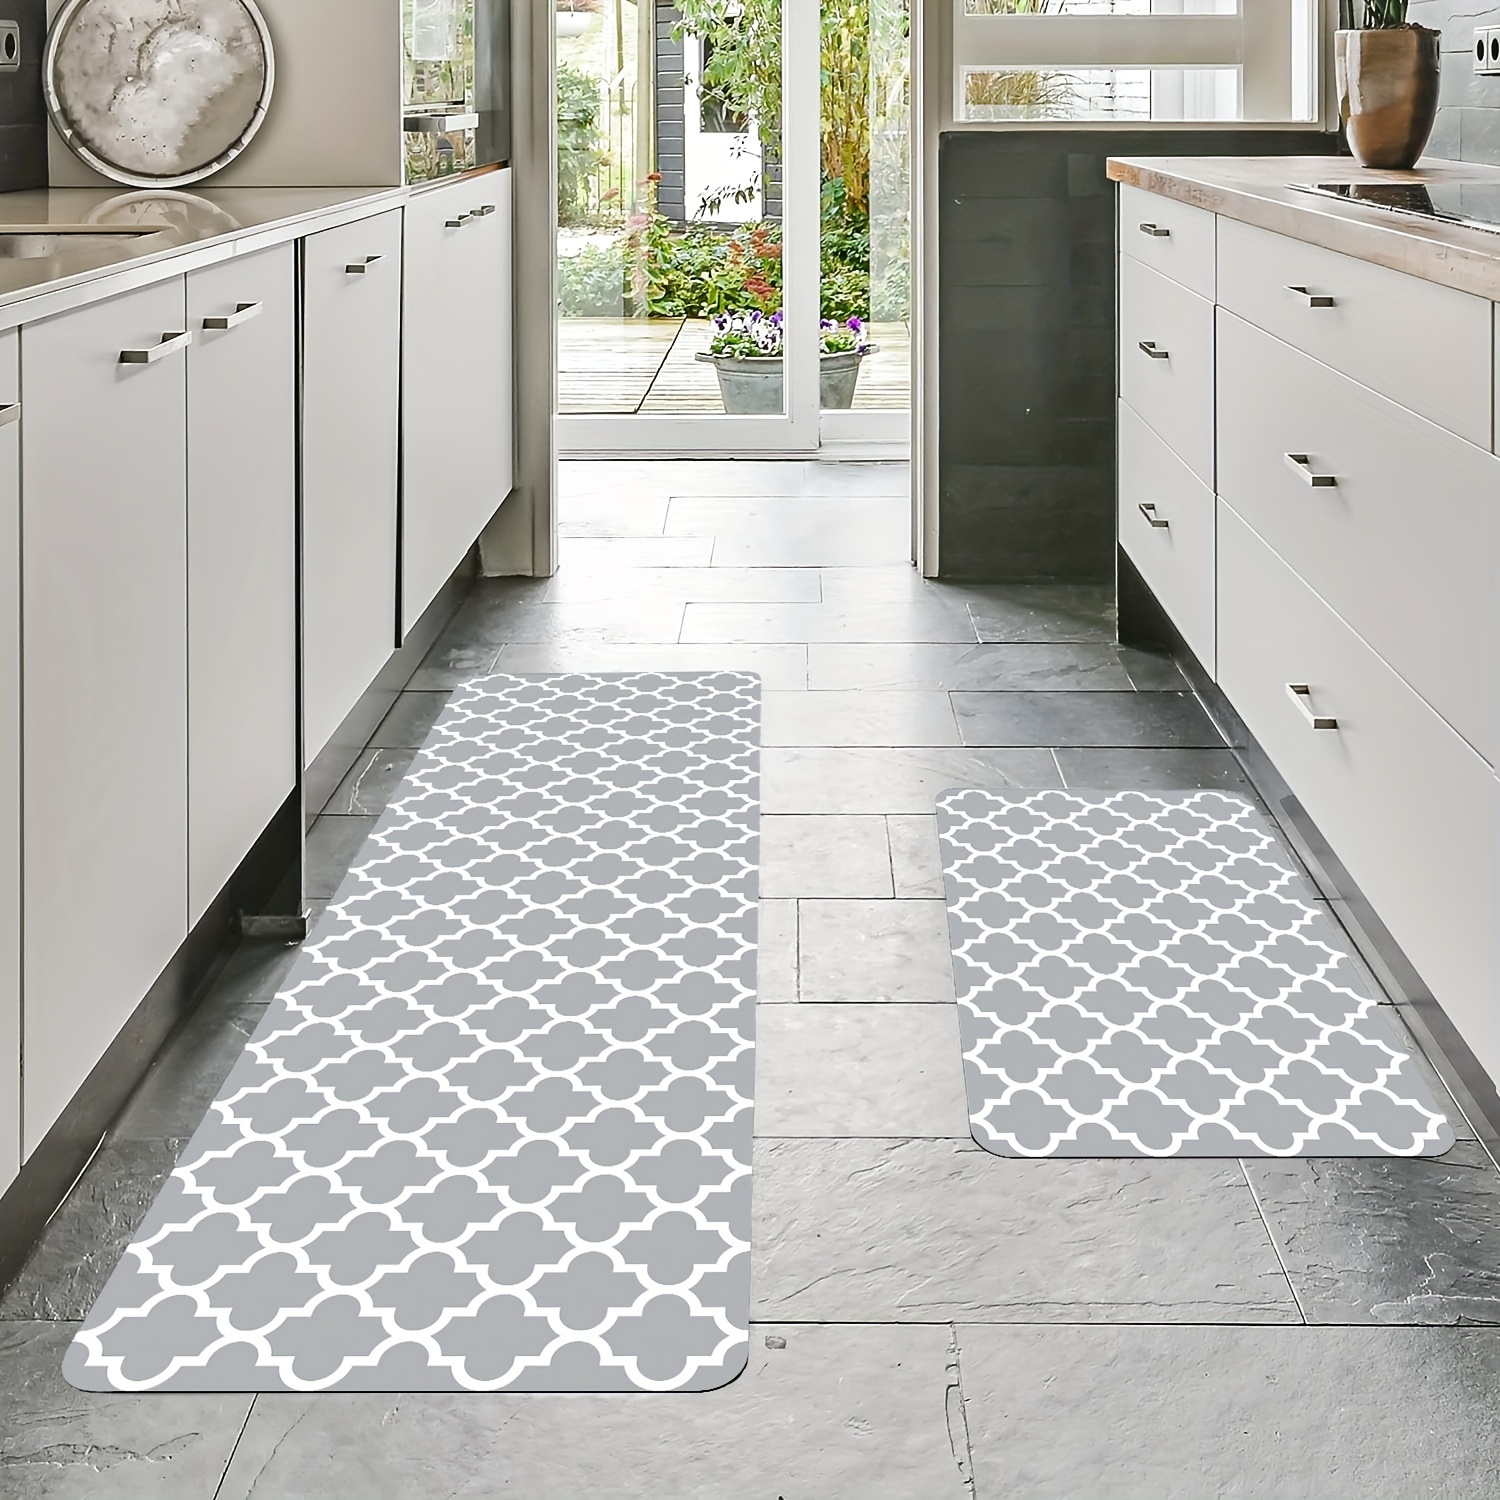 Super Absorbent Floor Mat Quick Drying Bathroom Mat Non-slip Floor Door  Carpet Easy To Clean Home Oil-proof Kitchen Mat 40*60cm